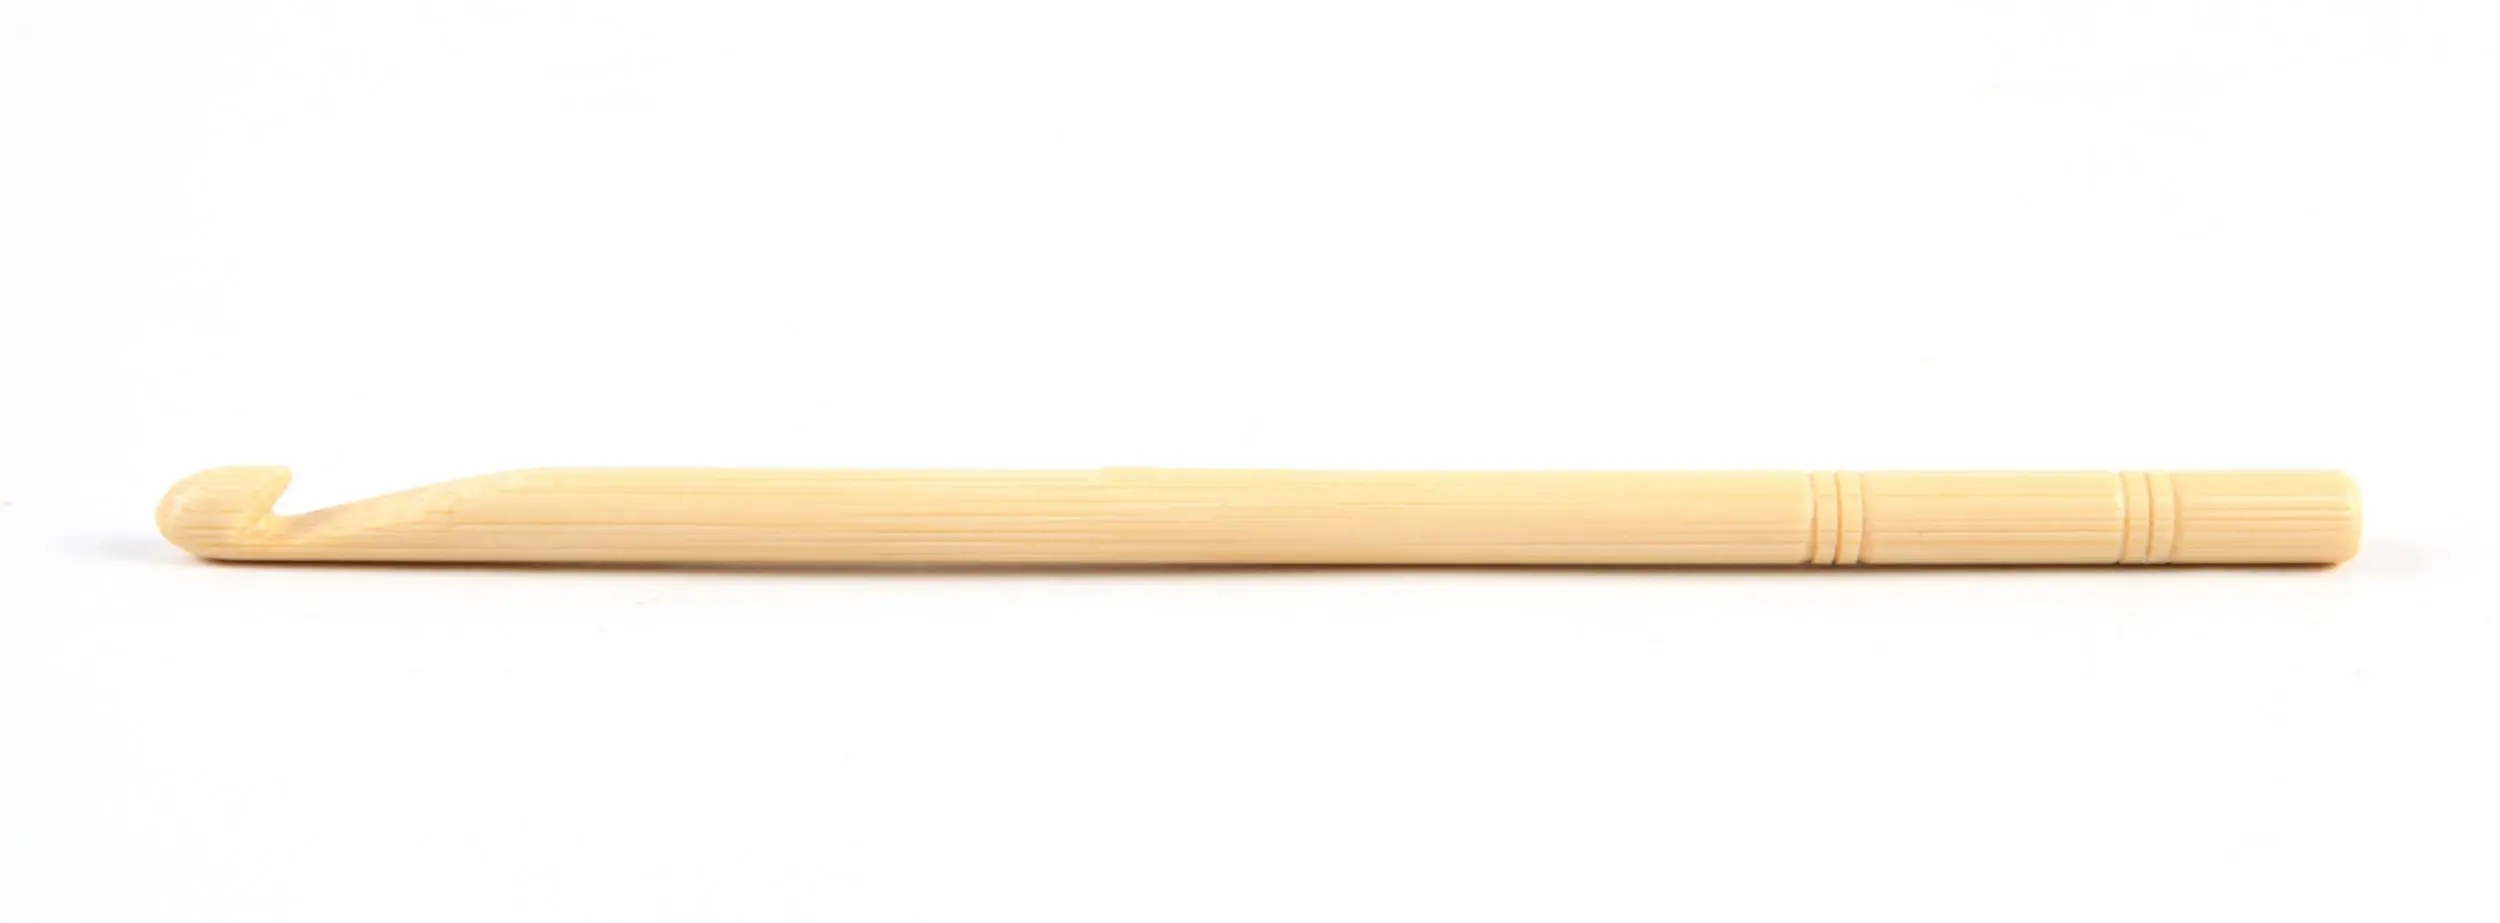 22507 Крючок бамбуковий KnitPro, 6.00 мм